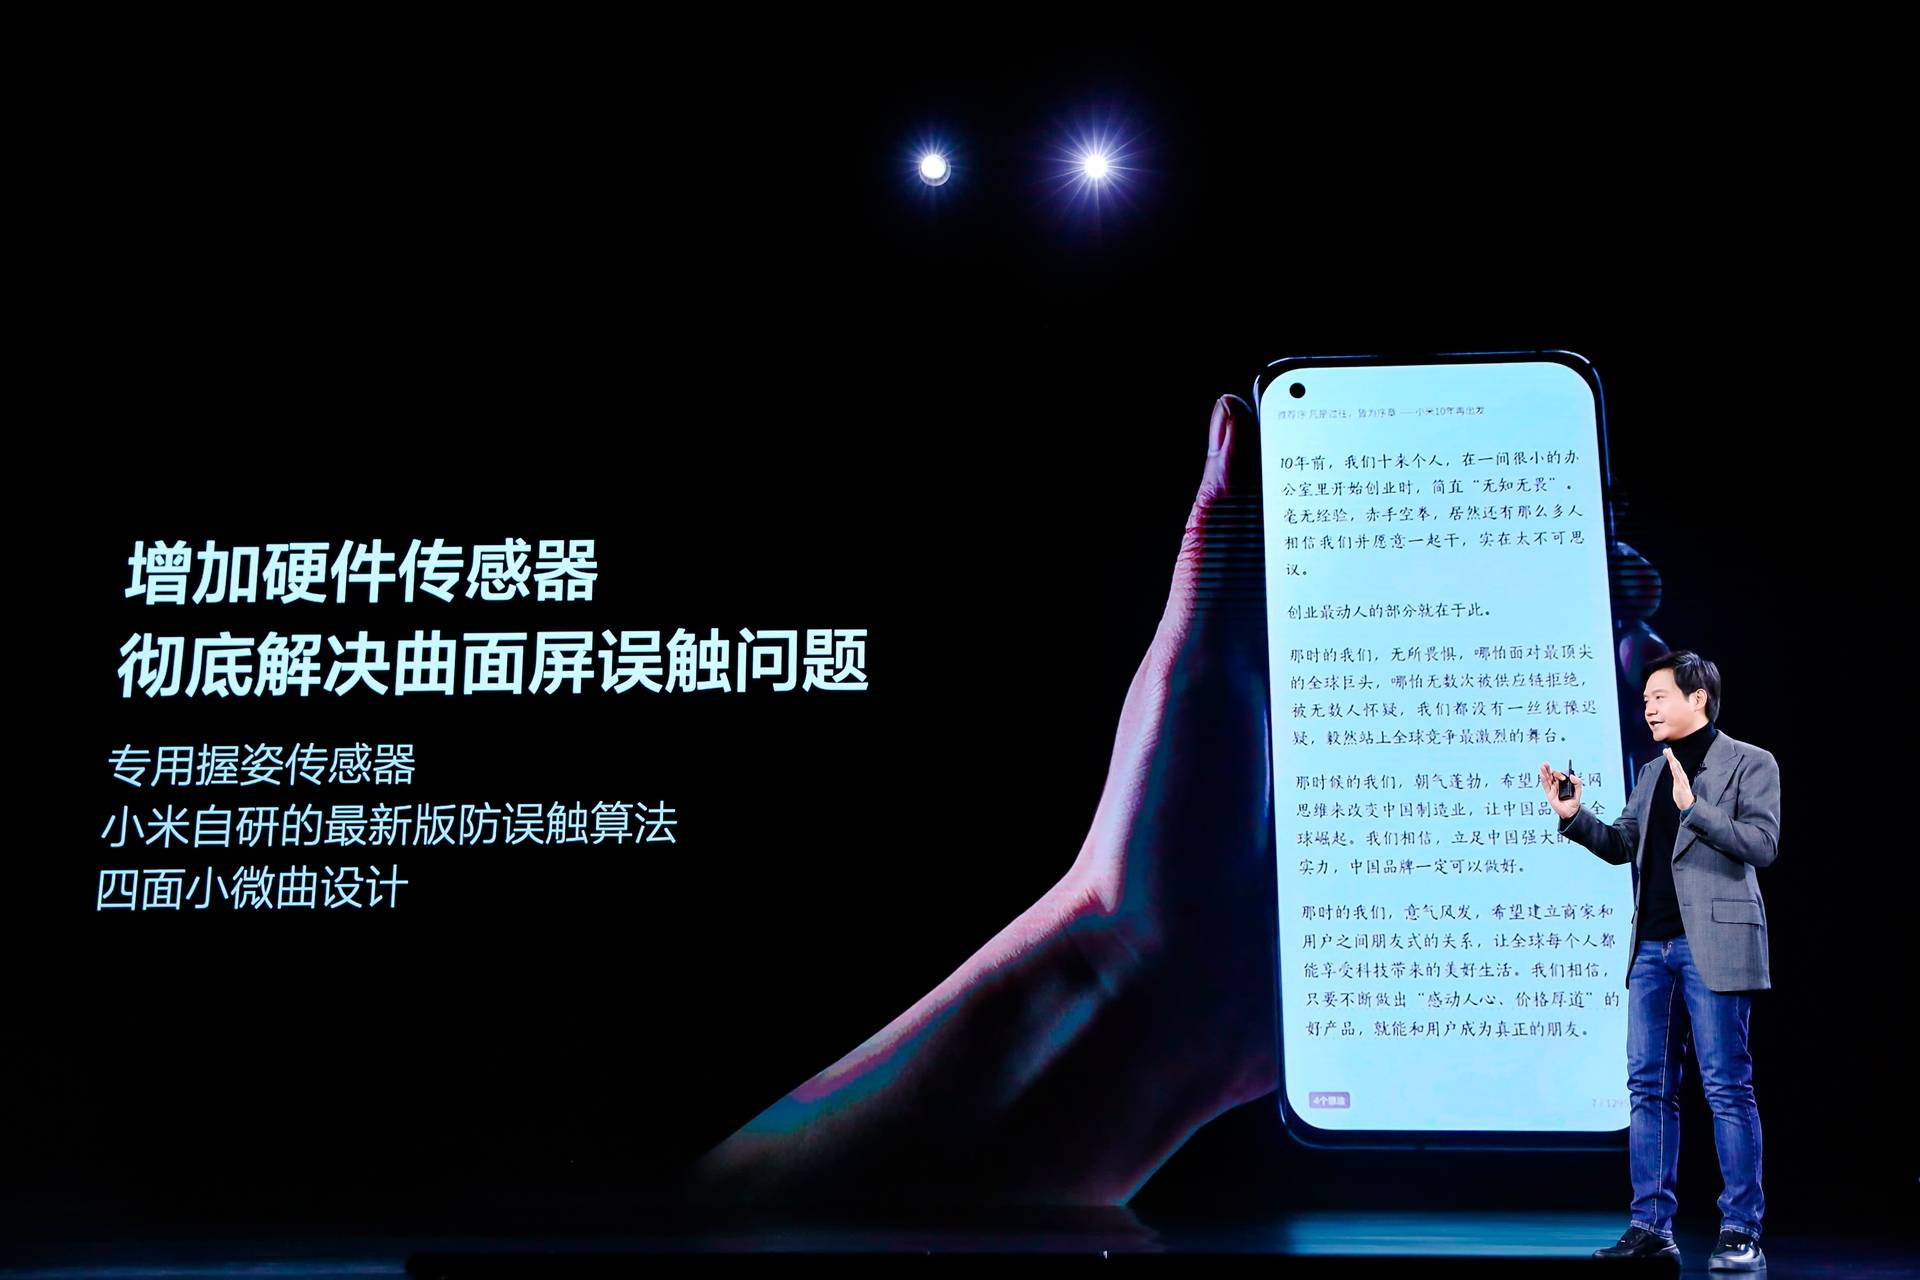 1741609159464 .pic hd - Conferenza Xiaomi Mi 11: Mi 11 offre le prestazioni più forti e lo schermo migliore, MIUI 12.5 è il corpo completo